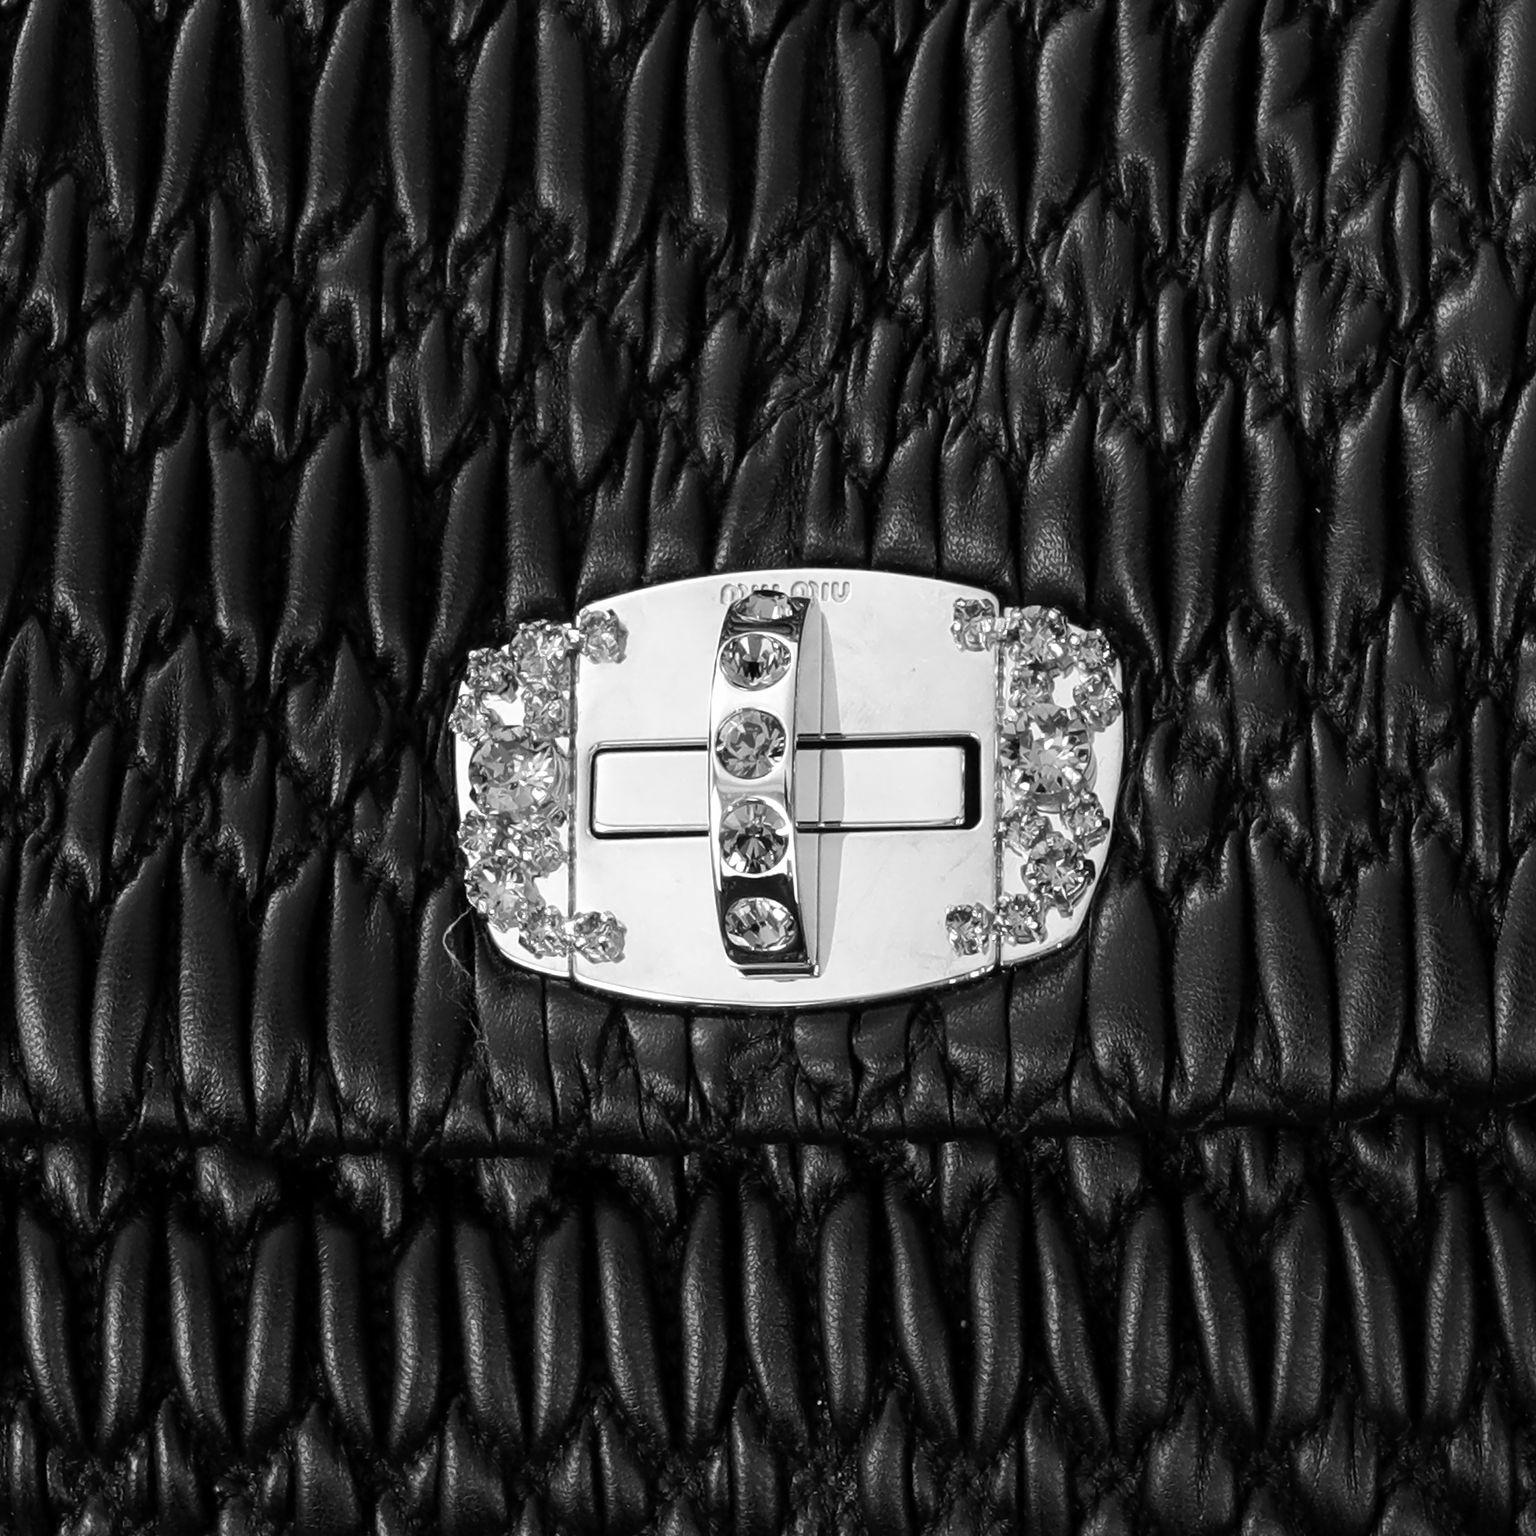 Ce sac Miu Miu Black Crystal Condit est en parfait état.  Ce modèle emblématique se compose de cuir Nappa matelassé en relief noir et d'une fermeture à verrou tournant en argent et en cristal.  Peut être porté avec la lanière de cuir amovible ou la